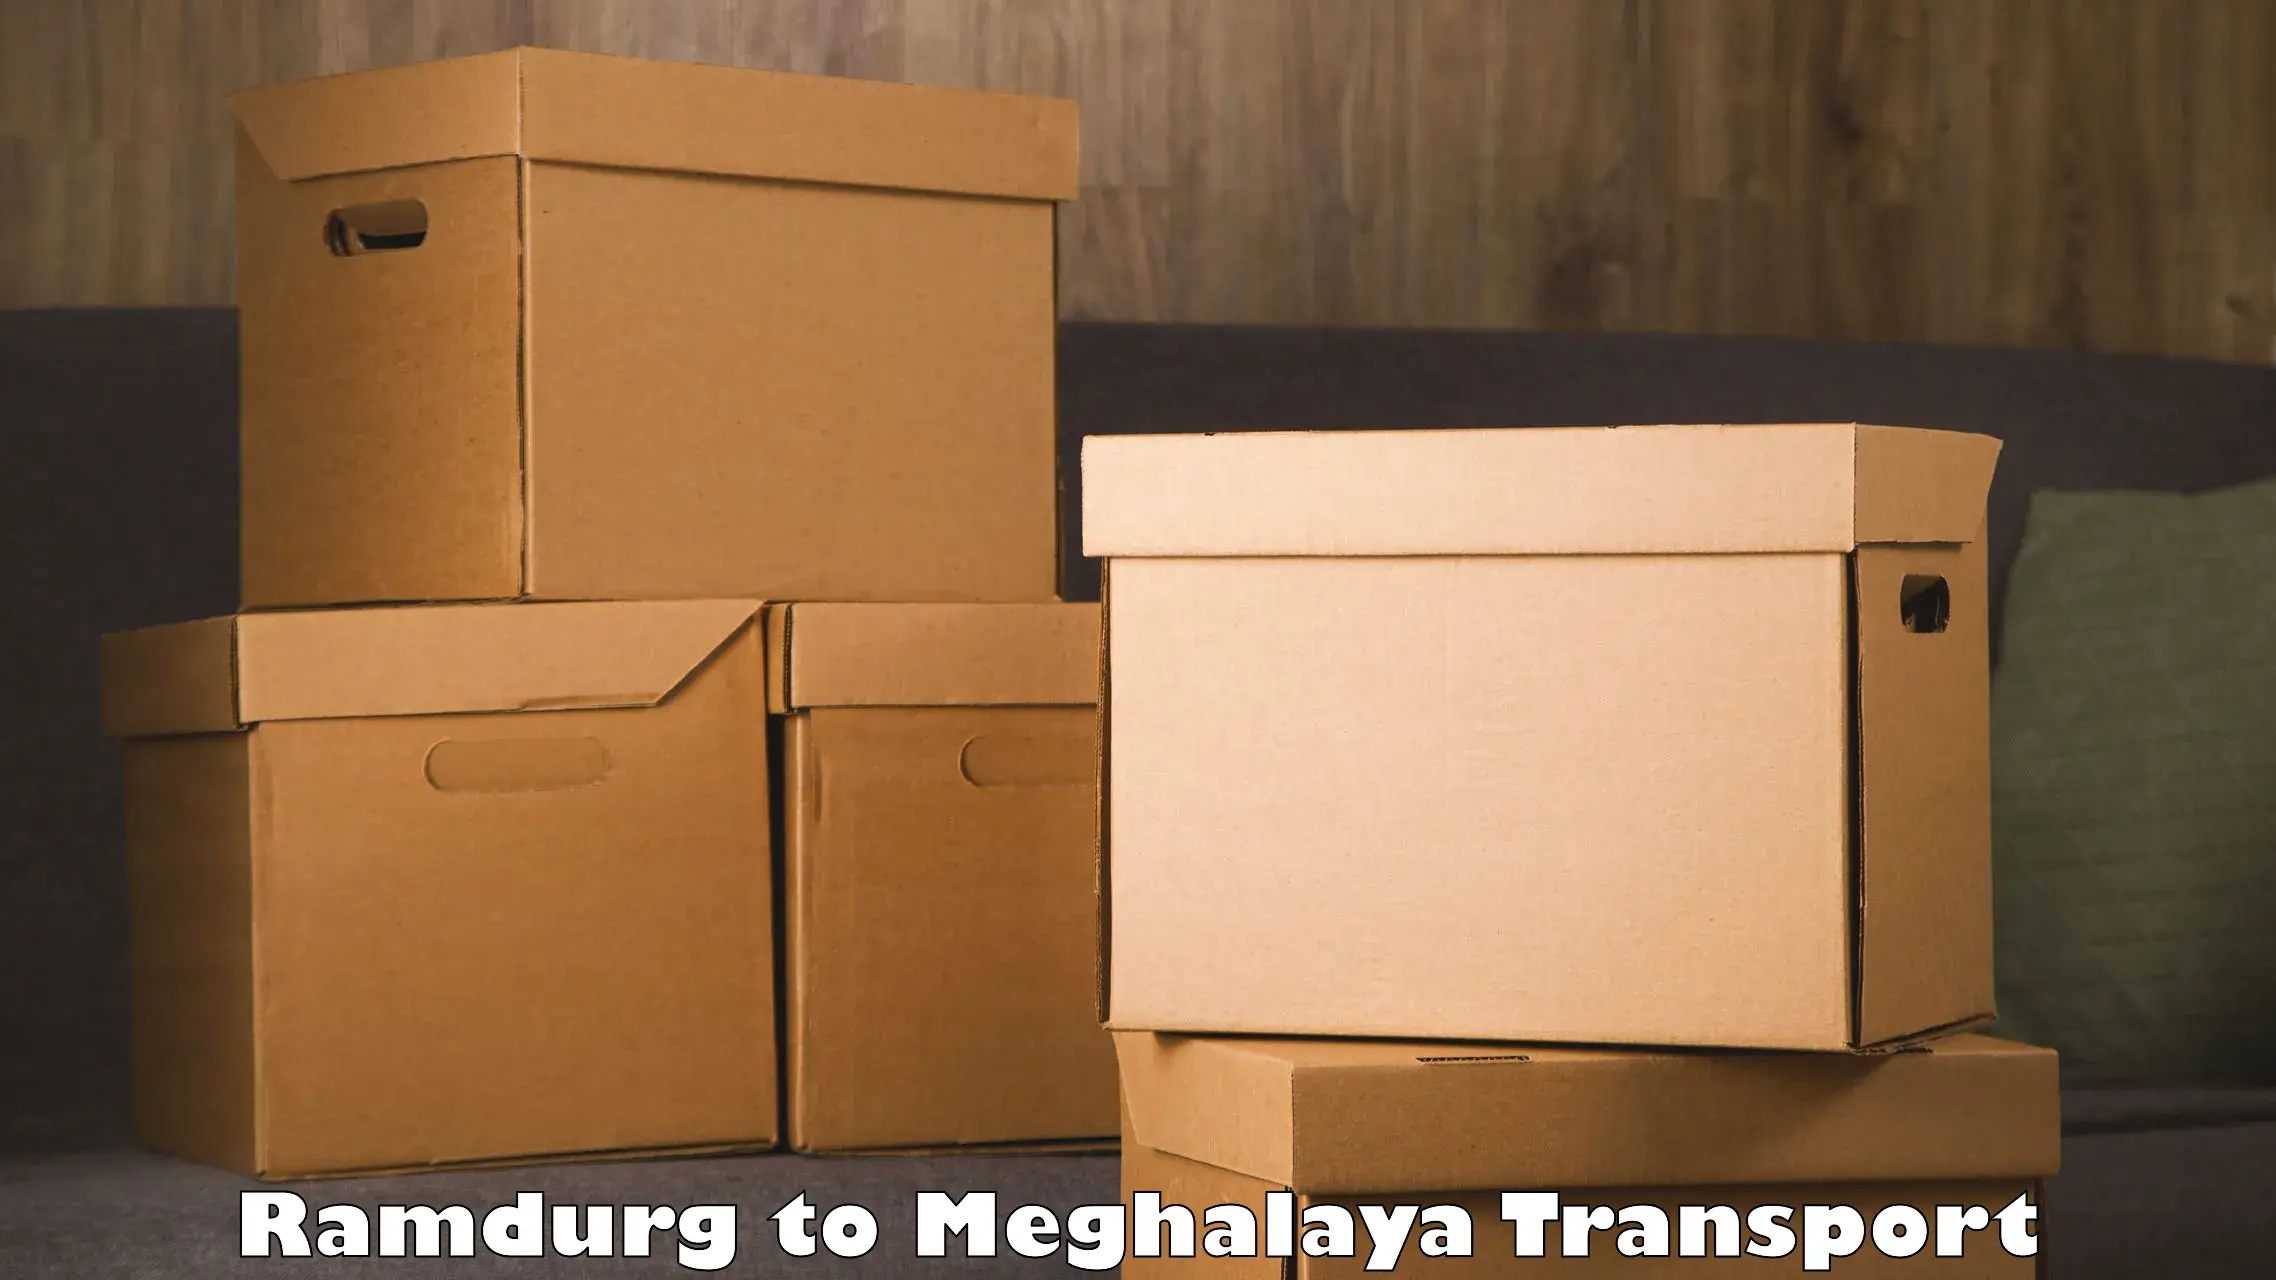 Furniture transport service Ramdurg to Meghalaya